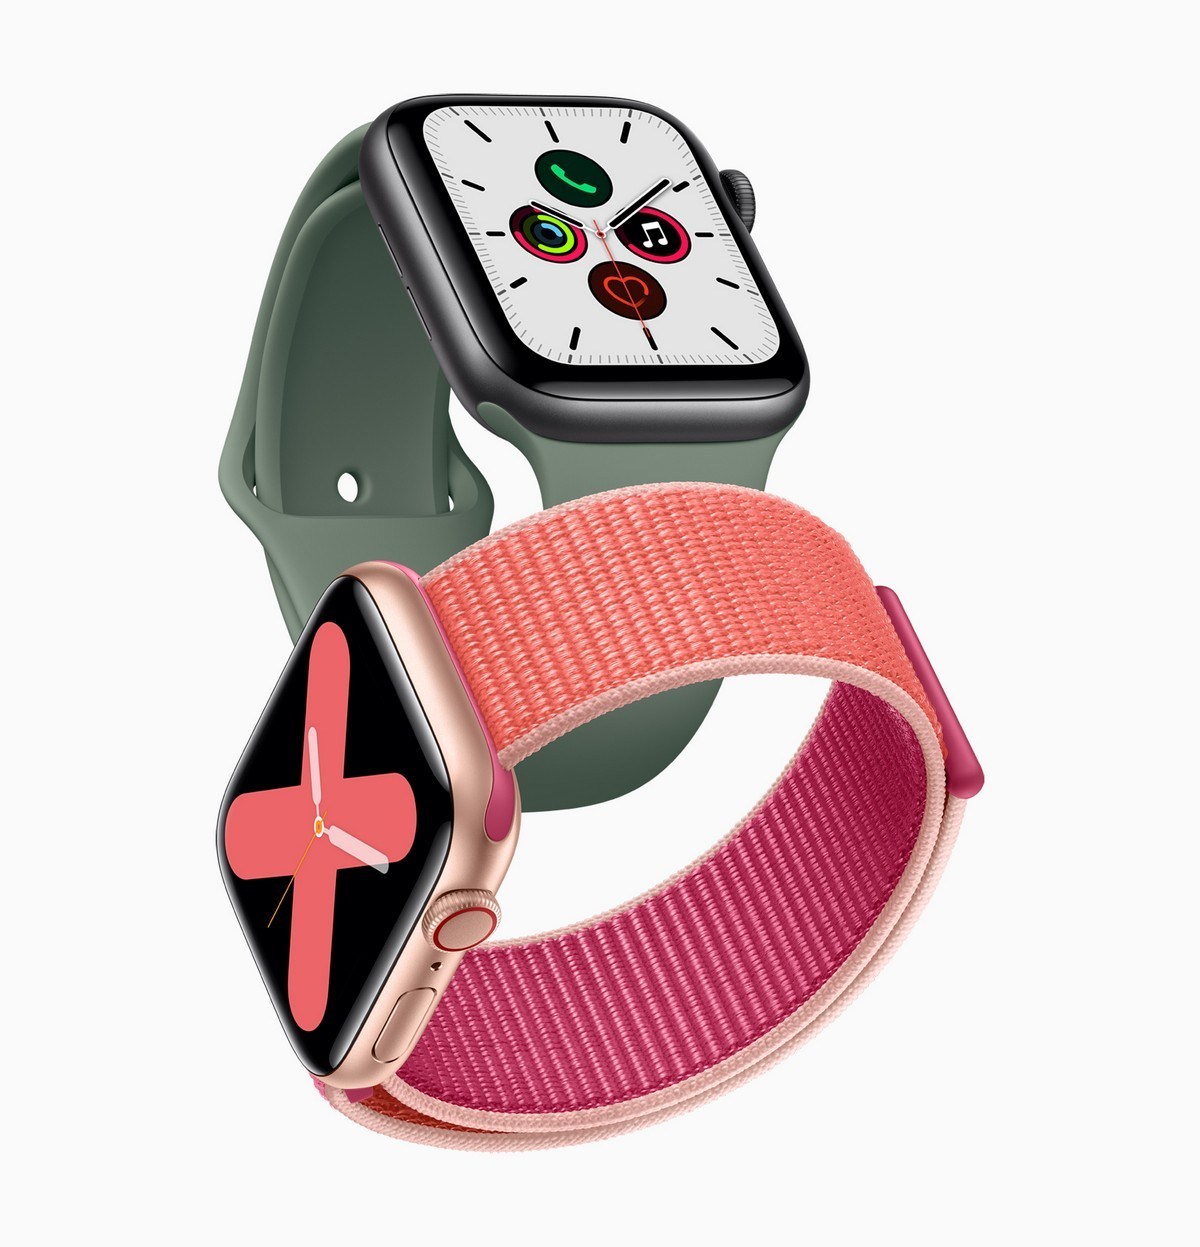 Memenuhi AppleYang Dapat Dipakai Terkini, The Apple Watch Seri 5